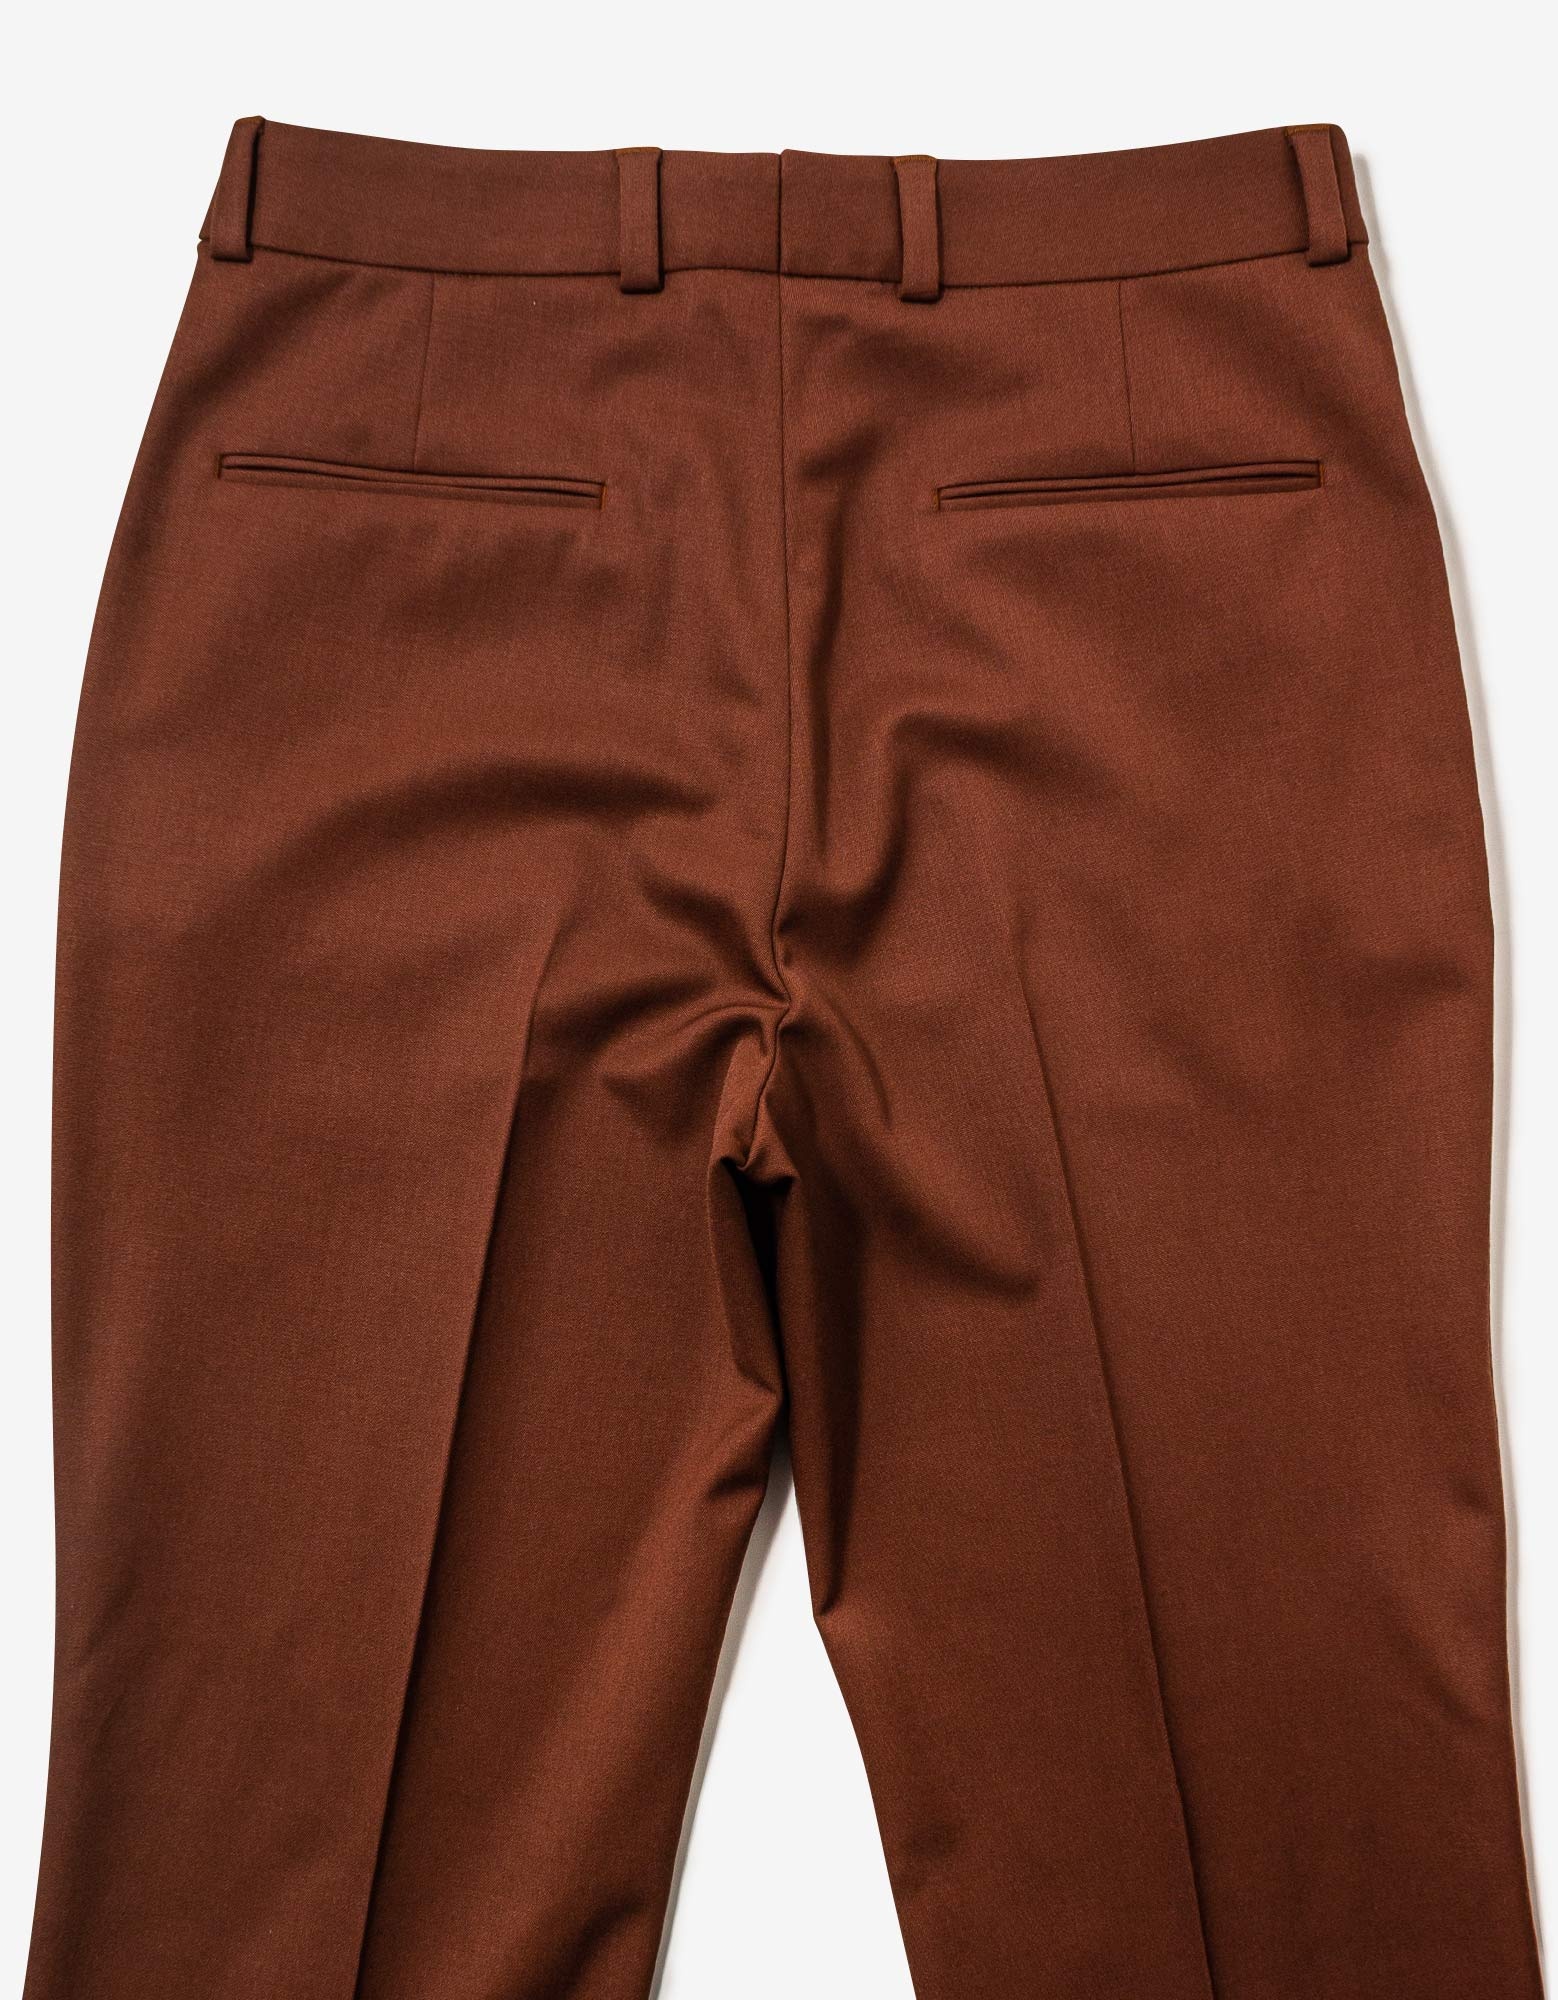 Brown Wool Trousers - 4